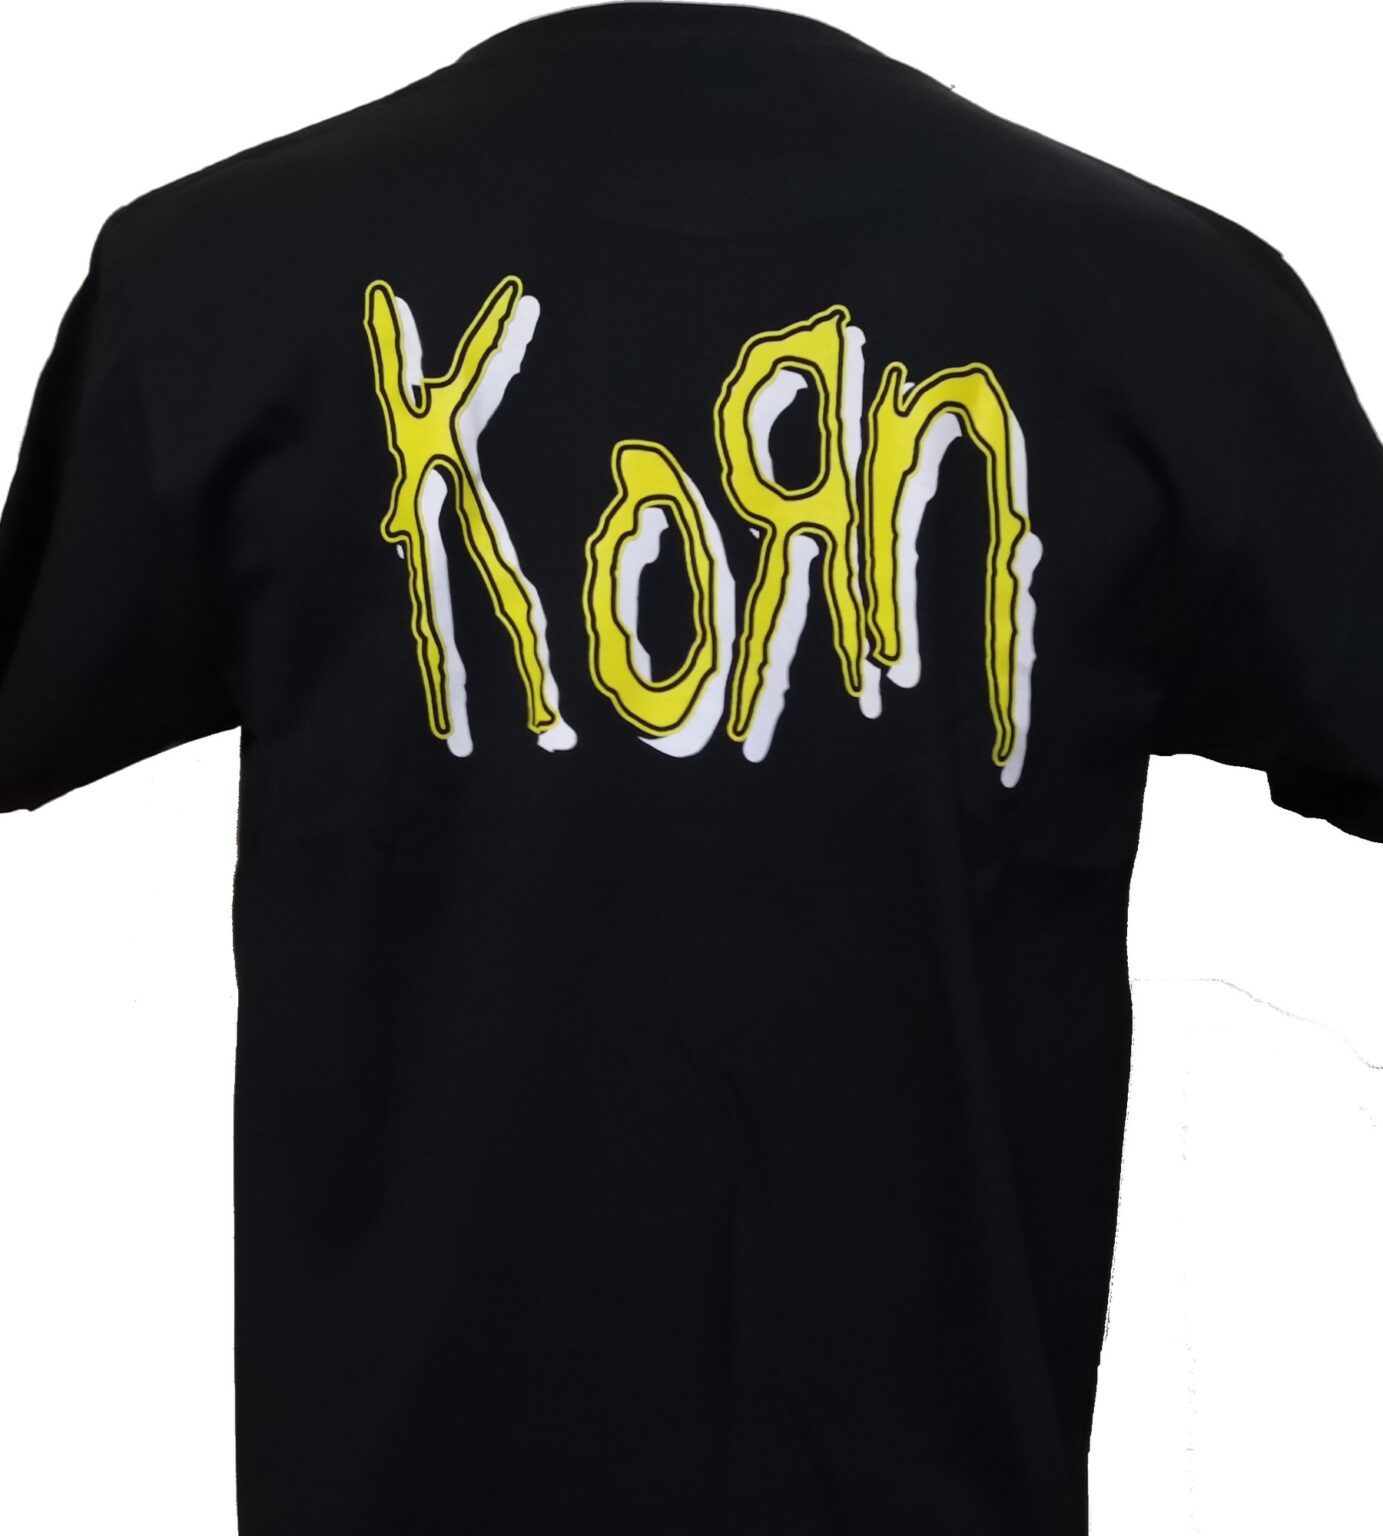 Korn tshirt size XL RoxxBKK